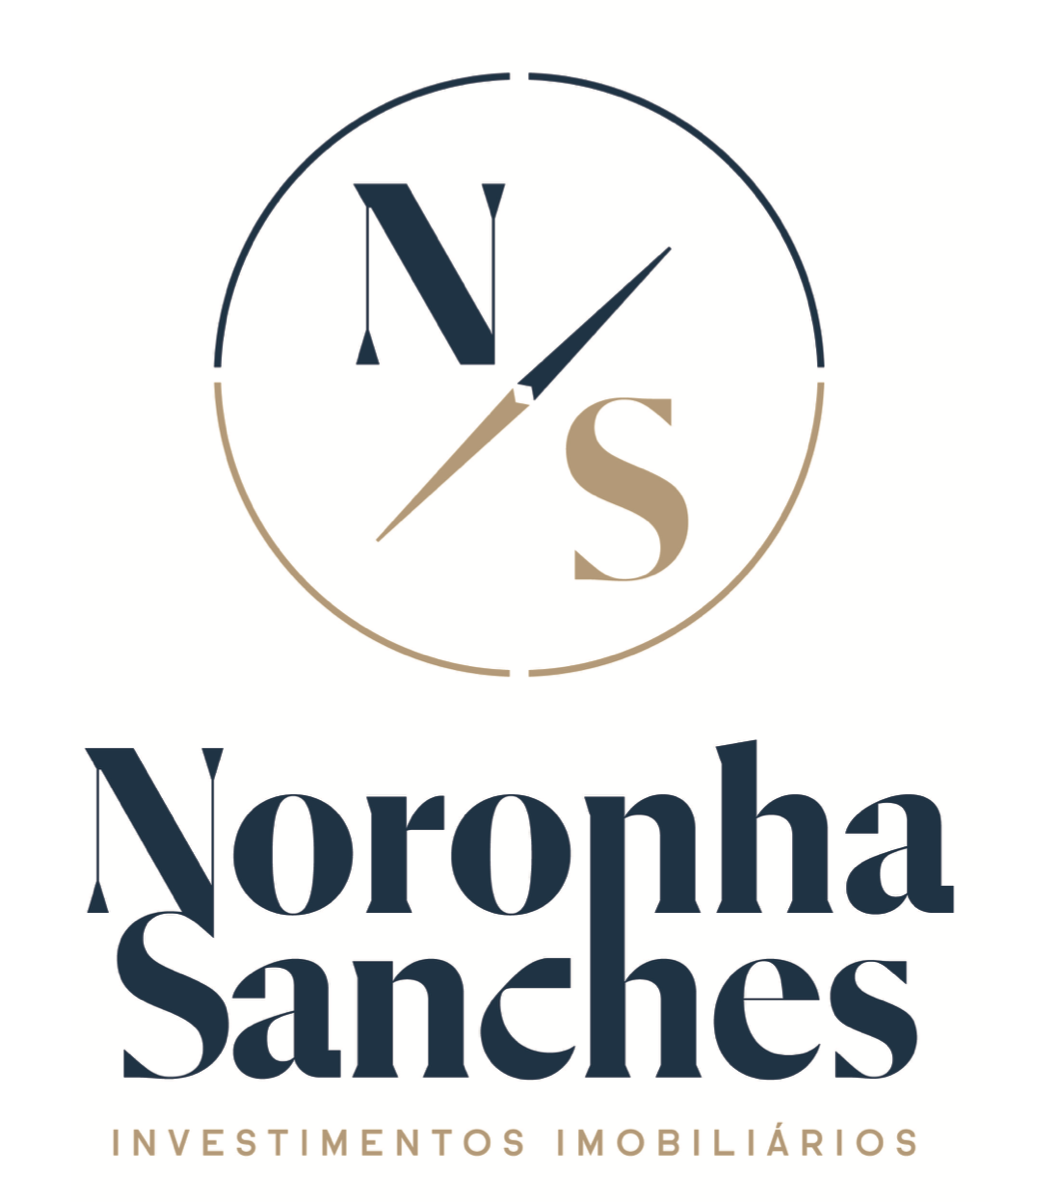 Noronha Sanches logo